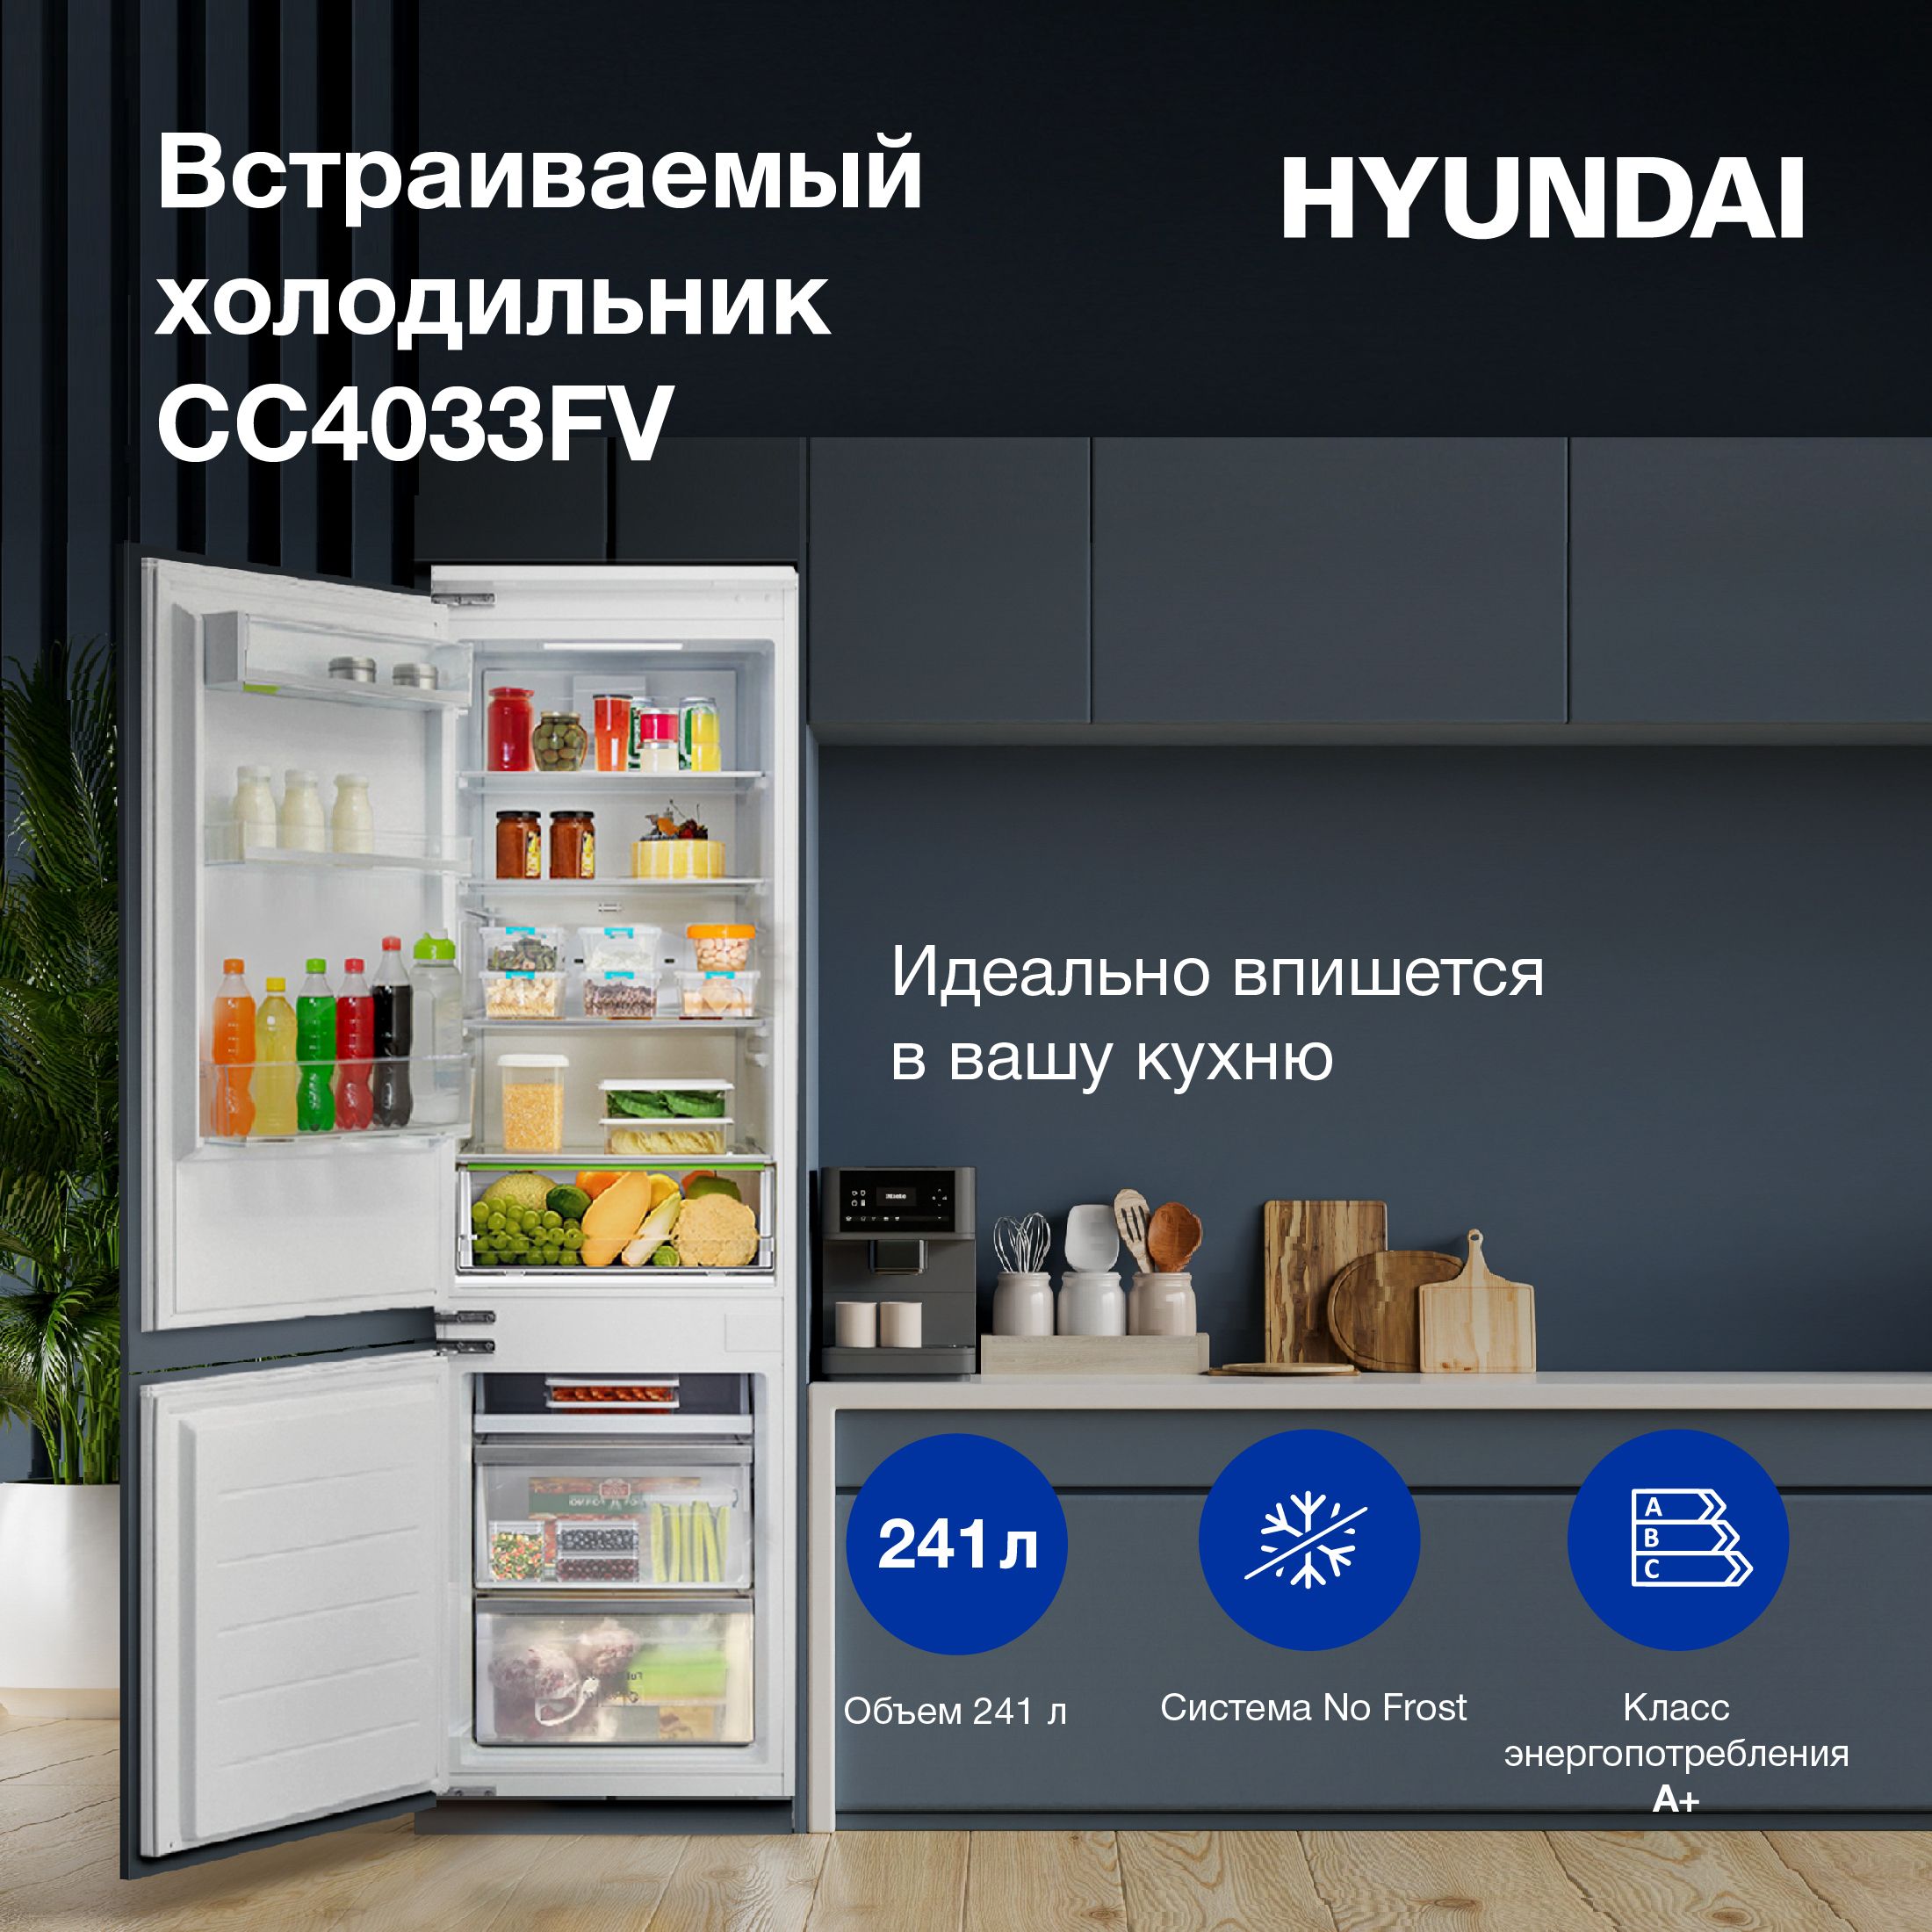 Dexp fresh bib420ama. Hyundai cc4033fv холодильник. Холодильник Hyundai cc4033fv схема встраивания. Встраиваемый холодильник Hyundai cc4033fv схема встраивания. Встроенный холодильник Hyundai.